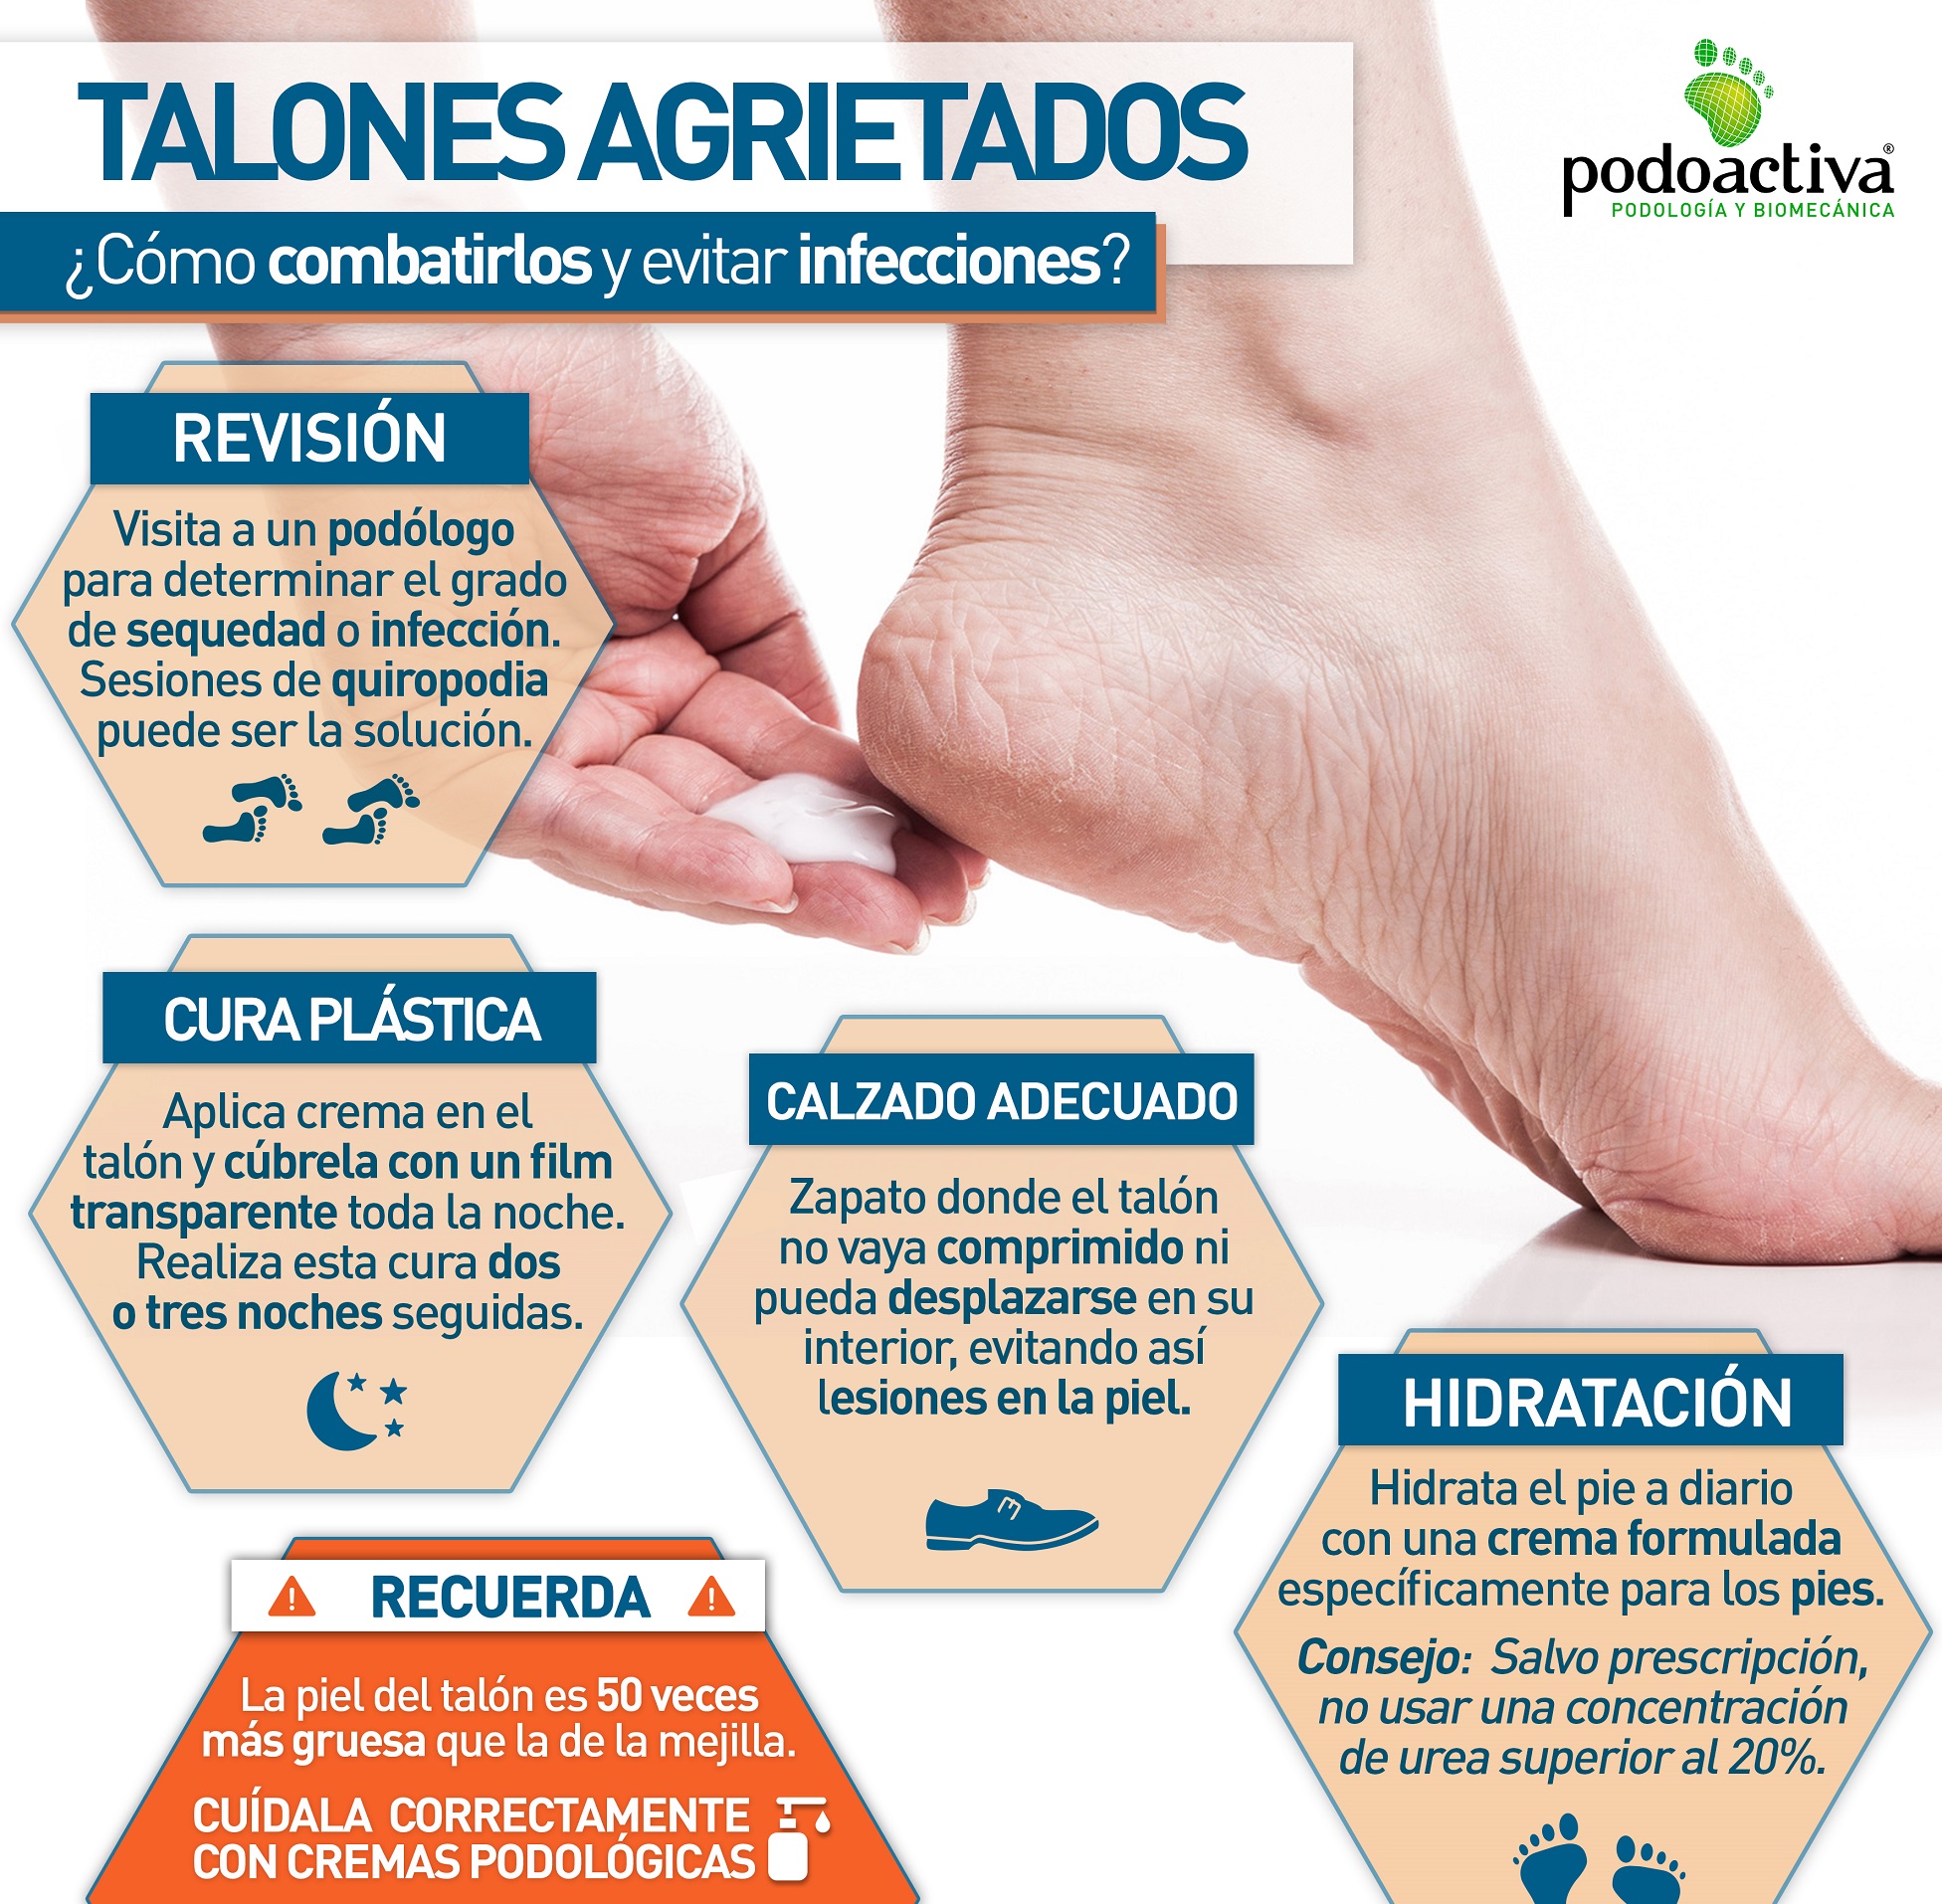 Podoactiva on X: ¿#PiesSecos o grietas en los #talones? Atento a estos  #consejos para #hidratar tus #pies en verano y evitar posibles infecciones.  #Podología #Salud ➡️ Toda la info sobre la correcta #